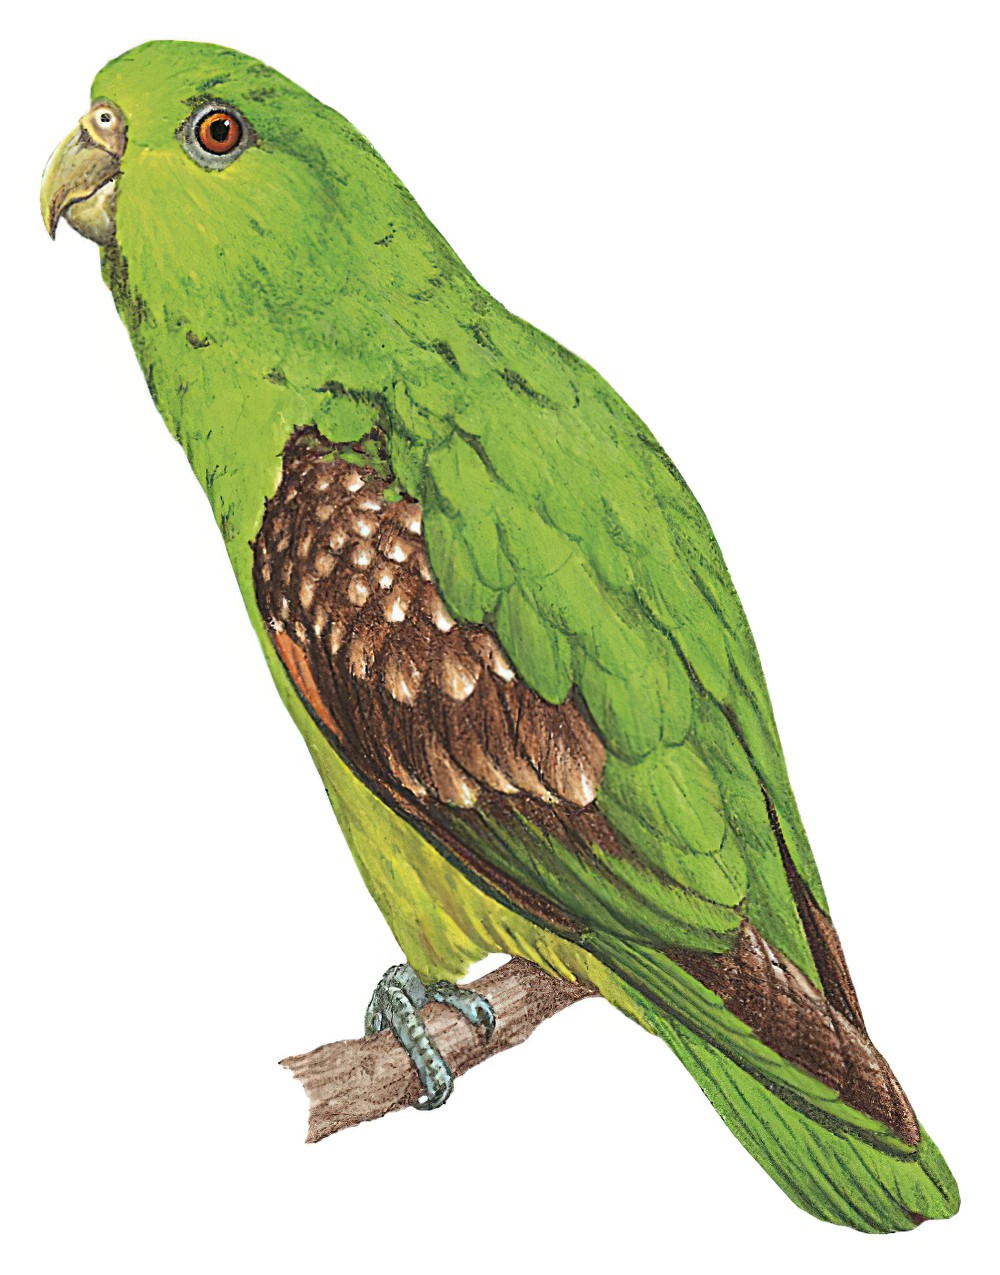 Spot-winged Parrotlet / Touit stictopterus